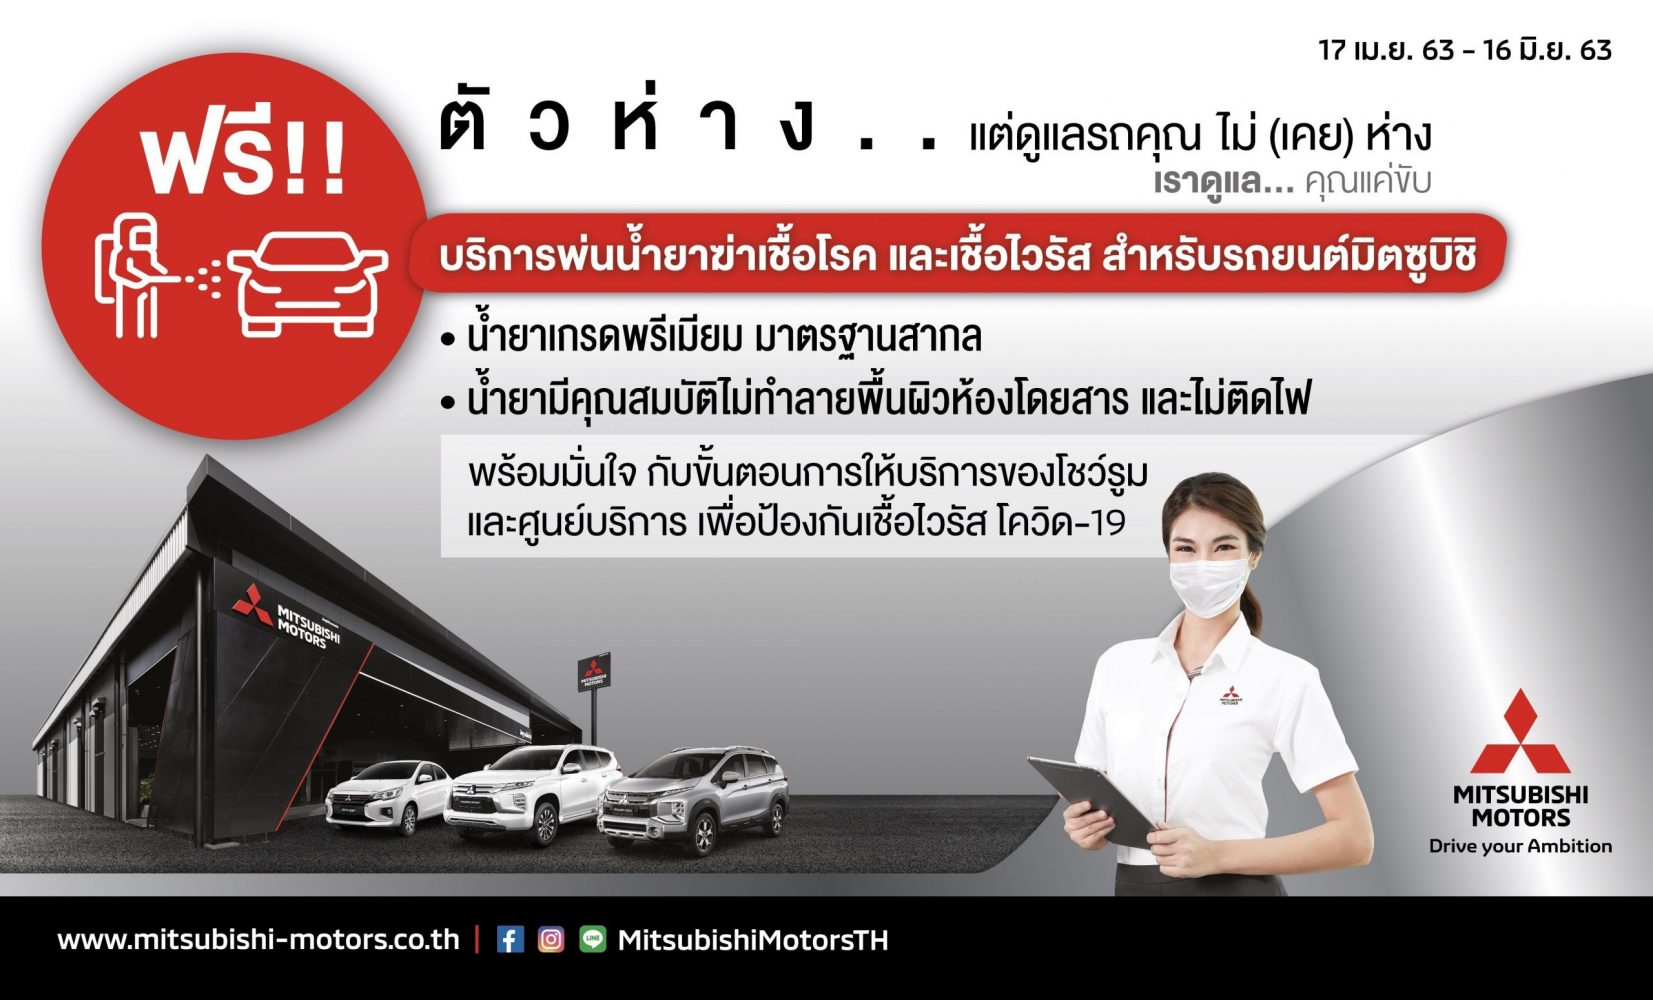 มิตซูบิชิ มอเตอร์ส ประเทศไทย บริการพ่นฆ่าเชื้อไวรัสภายในรถ ฟรี เพิ่มความมั่นใจให้ลูกค้าทั่วประเทศ